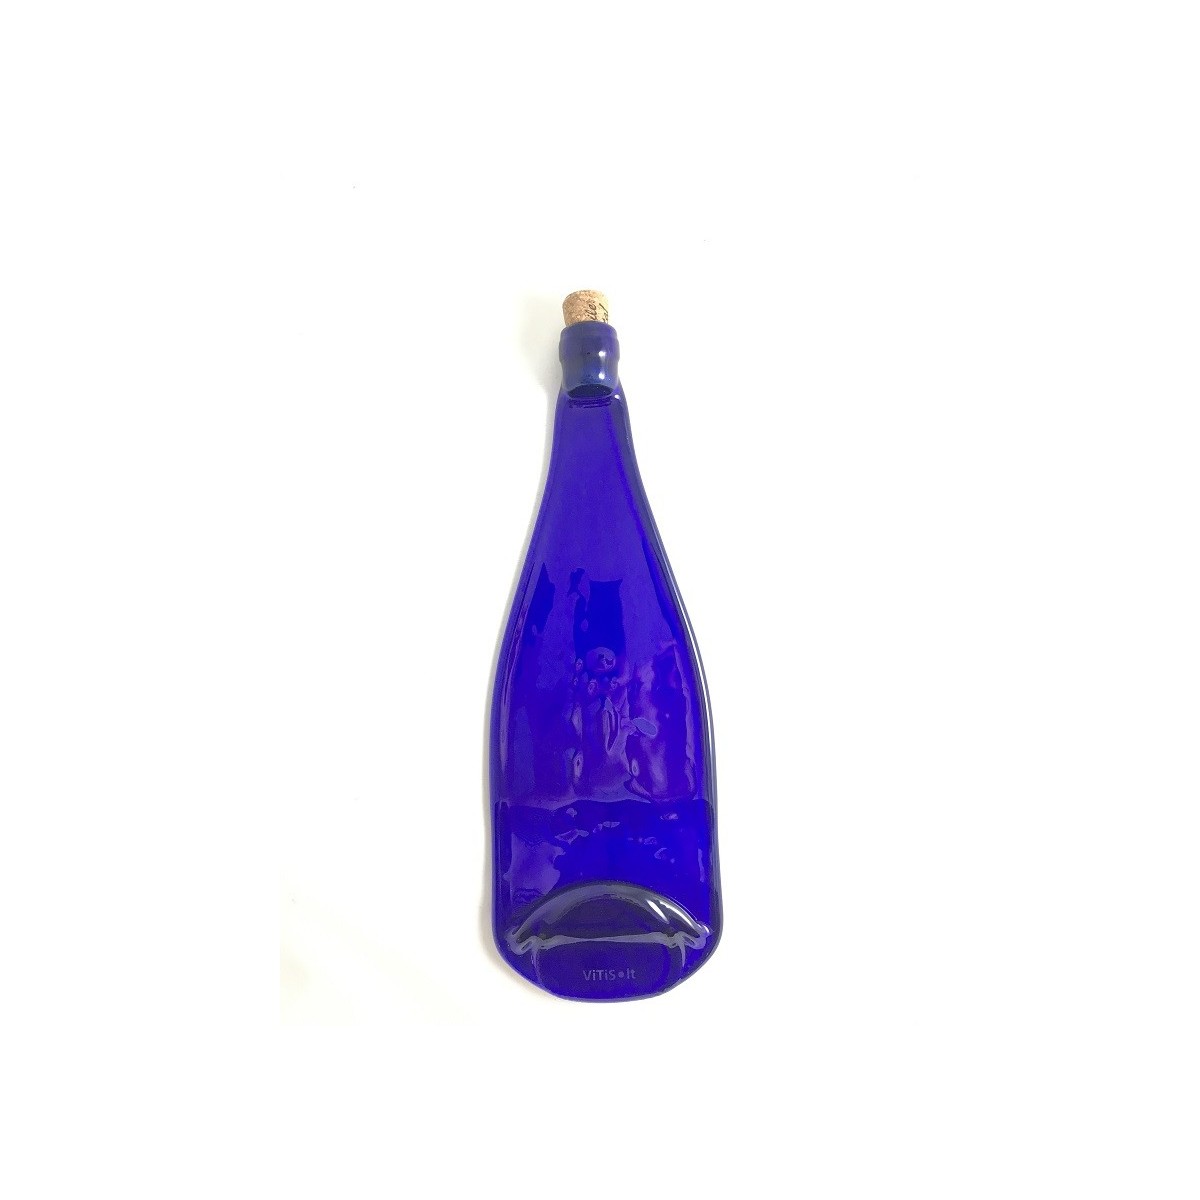 Stiklinis padėkliukas iš Vyno butelio